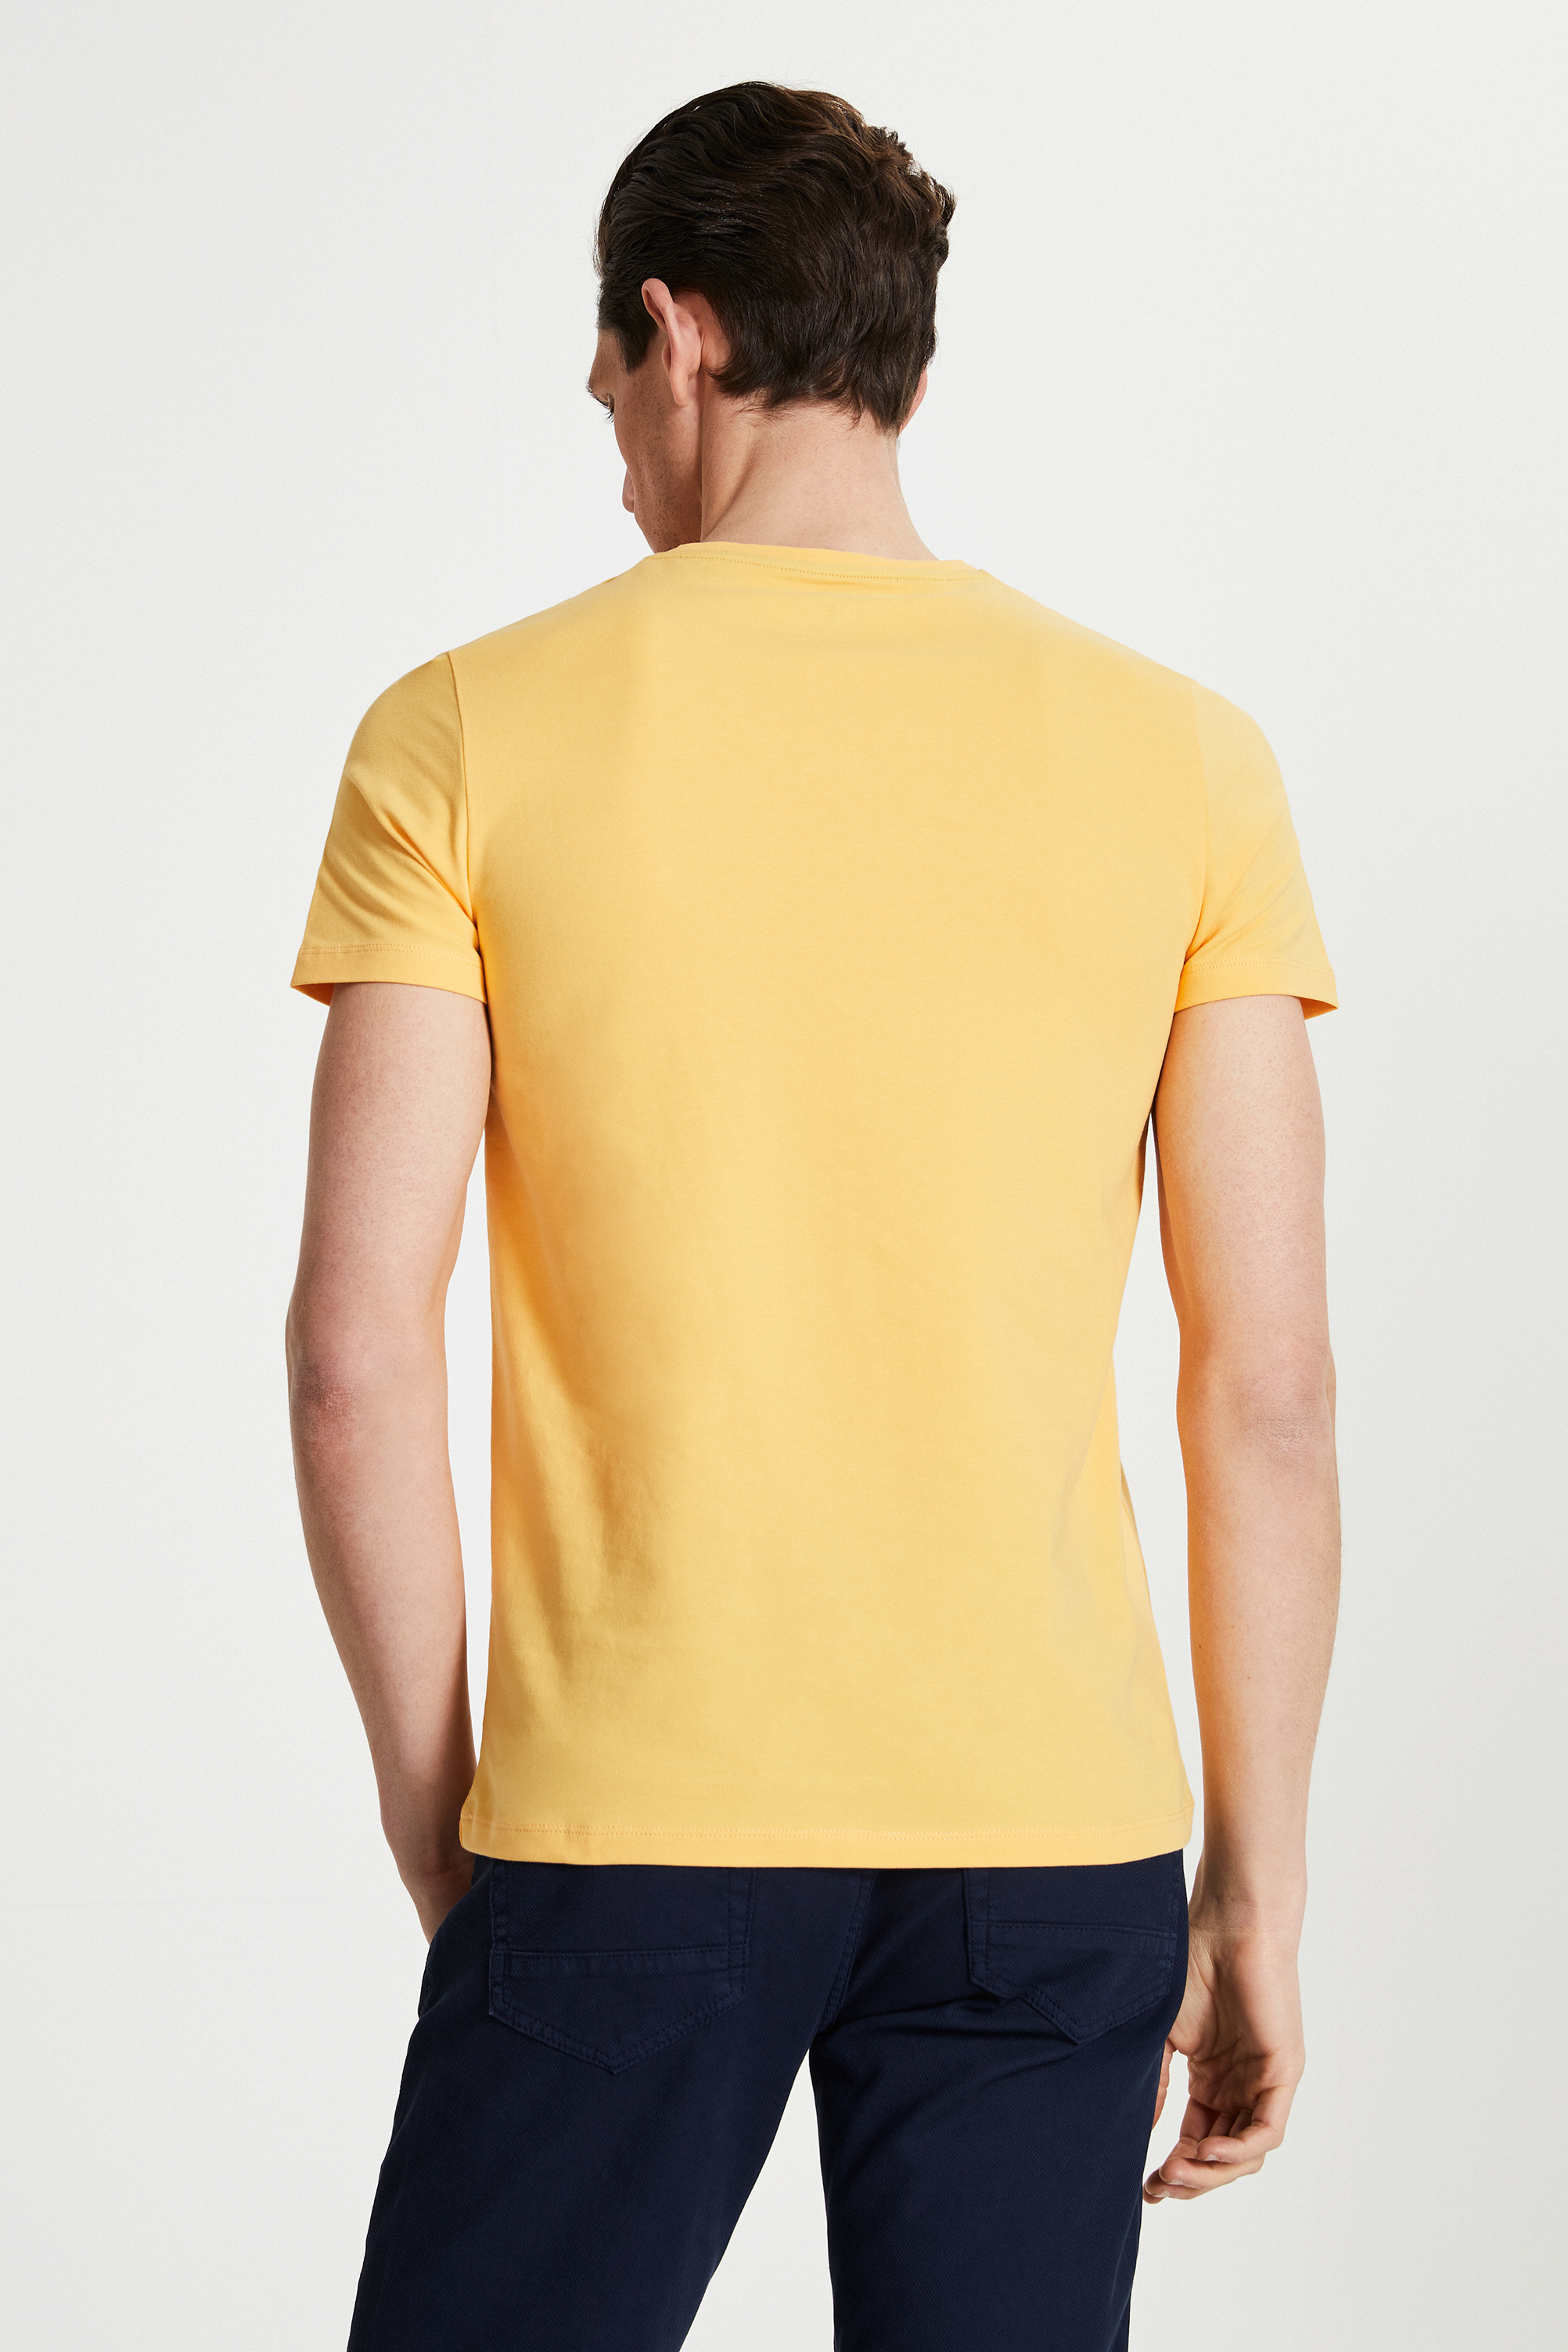 Damat Tween Tween Sarı Baskılı Baskılı T-Shirt. 4